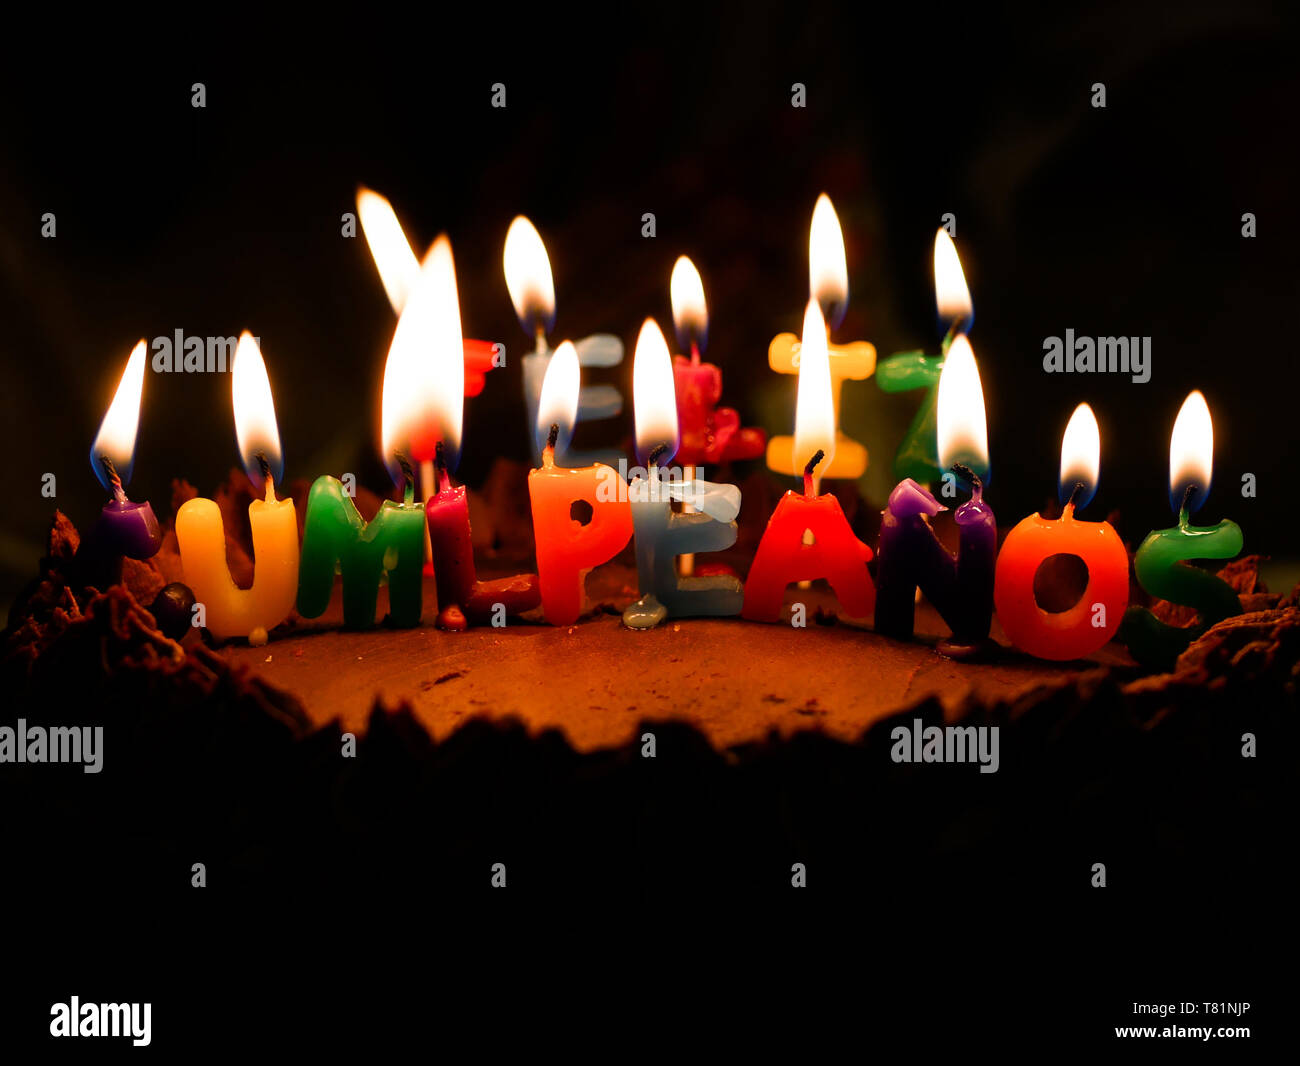 Joyeux anniversaire bougies avec des lettres en espagnol Feliz Cumpleaños  Photo Stock - Alamy